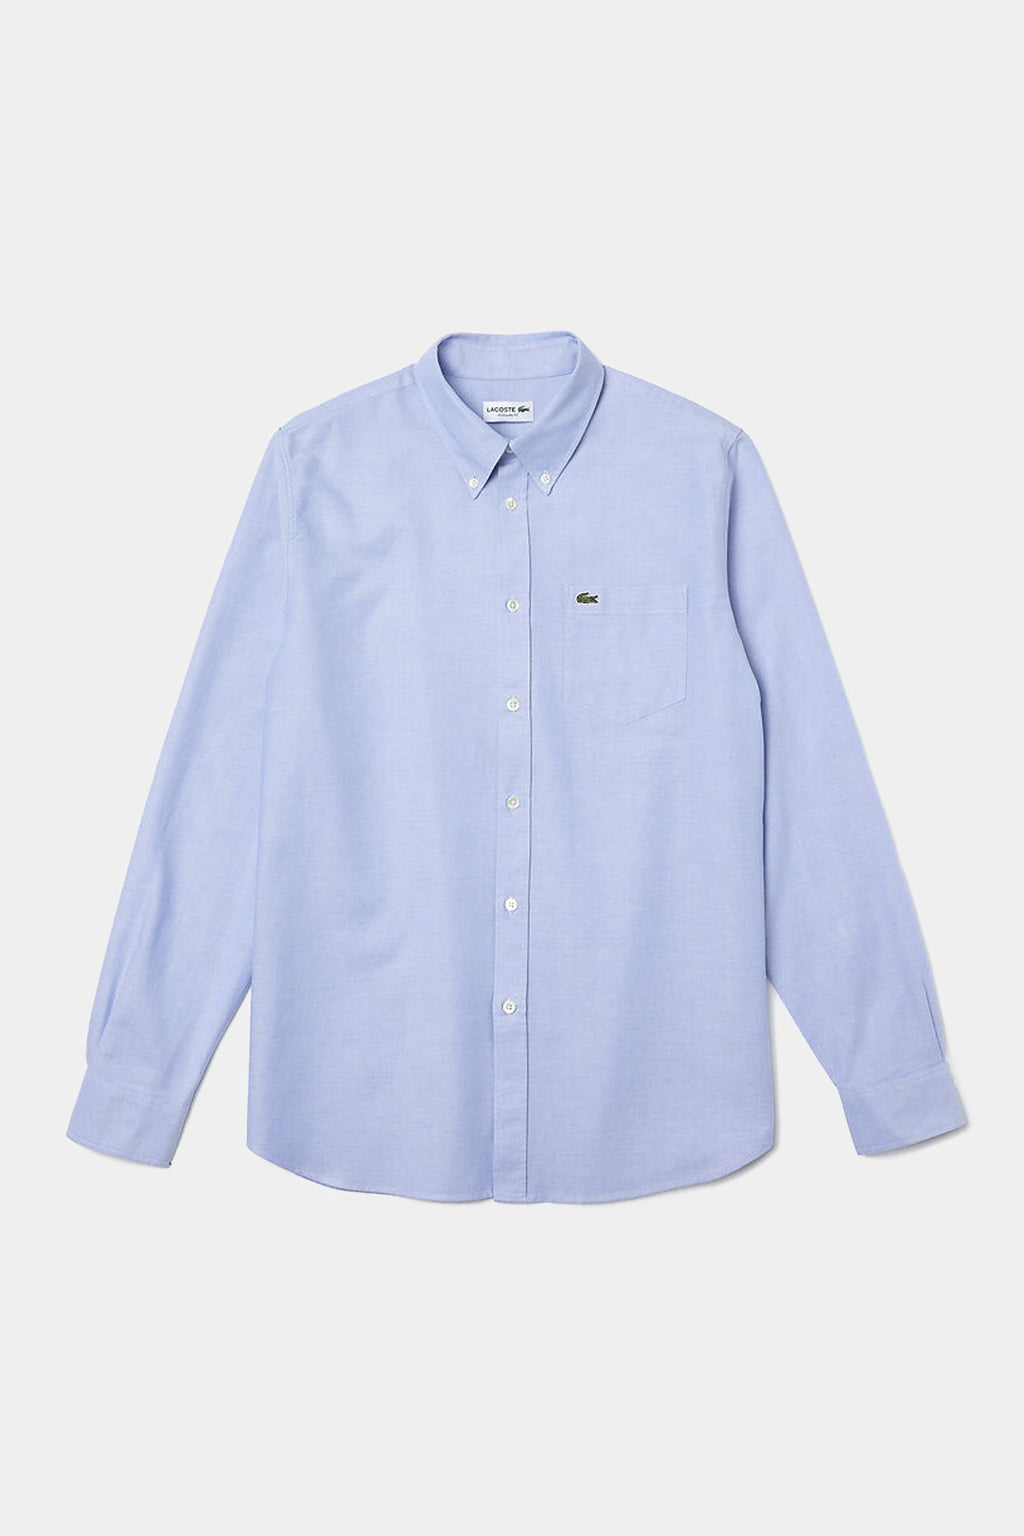 Lacoste - Men's Regular Fit Oxford Cotton Shirt